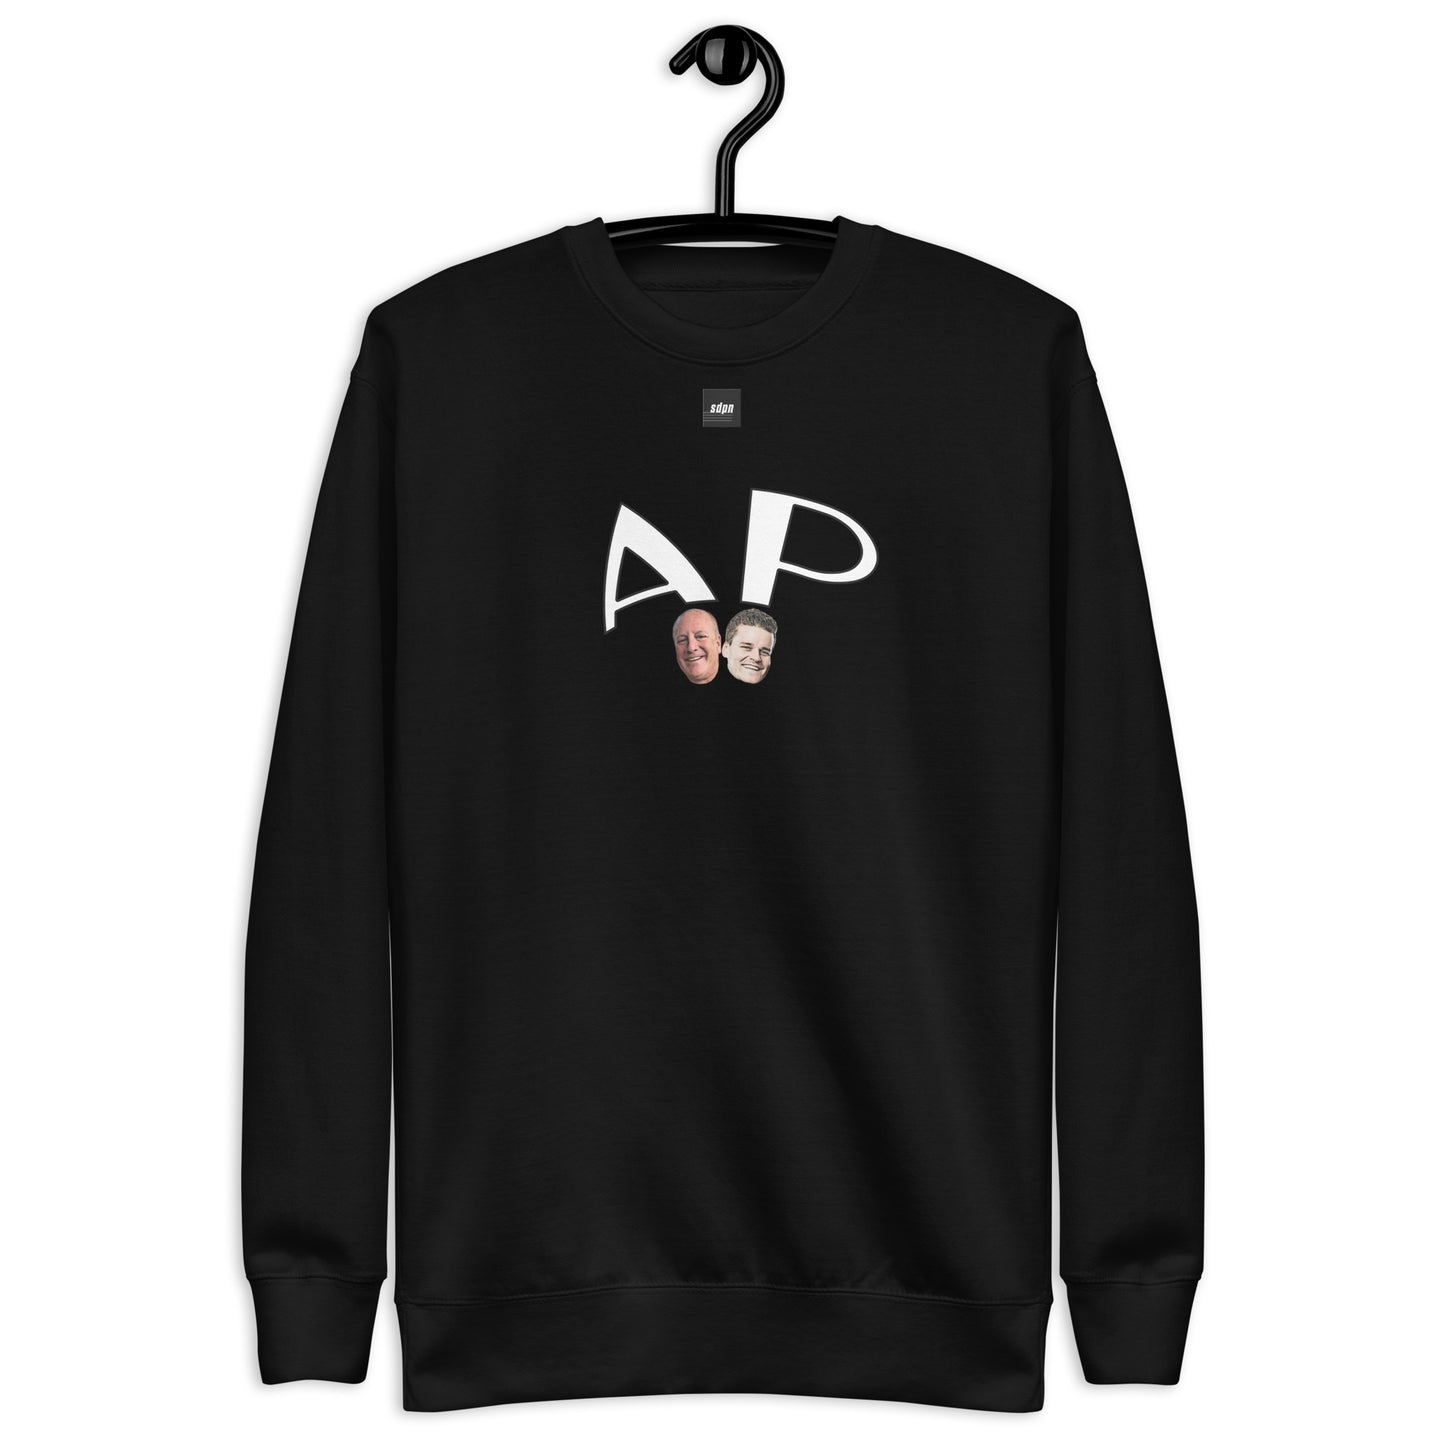 Agent Provocateur "AP" Sweater